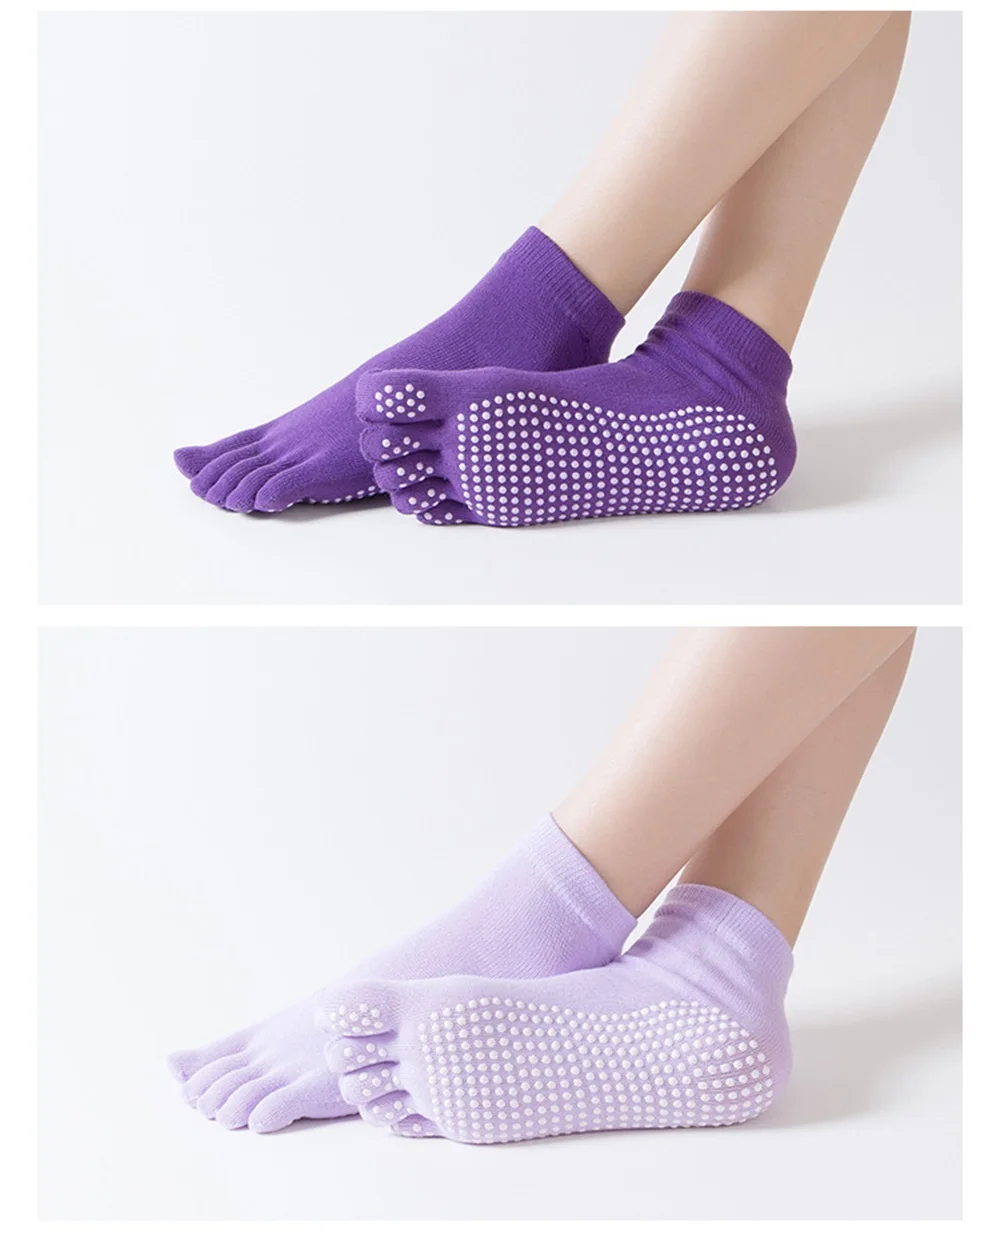 SPORTSHUB противоскользящие женские носки для йоги быстросохнущие носки для пилатеса и балета хорошее сцепление для леди хлопок спортивные носки NR0129